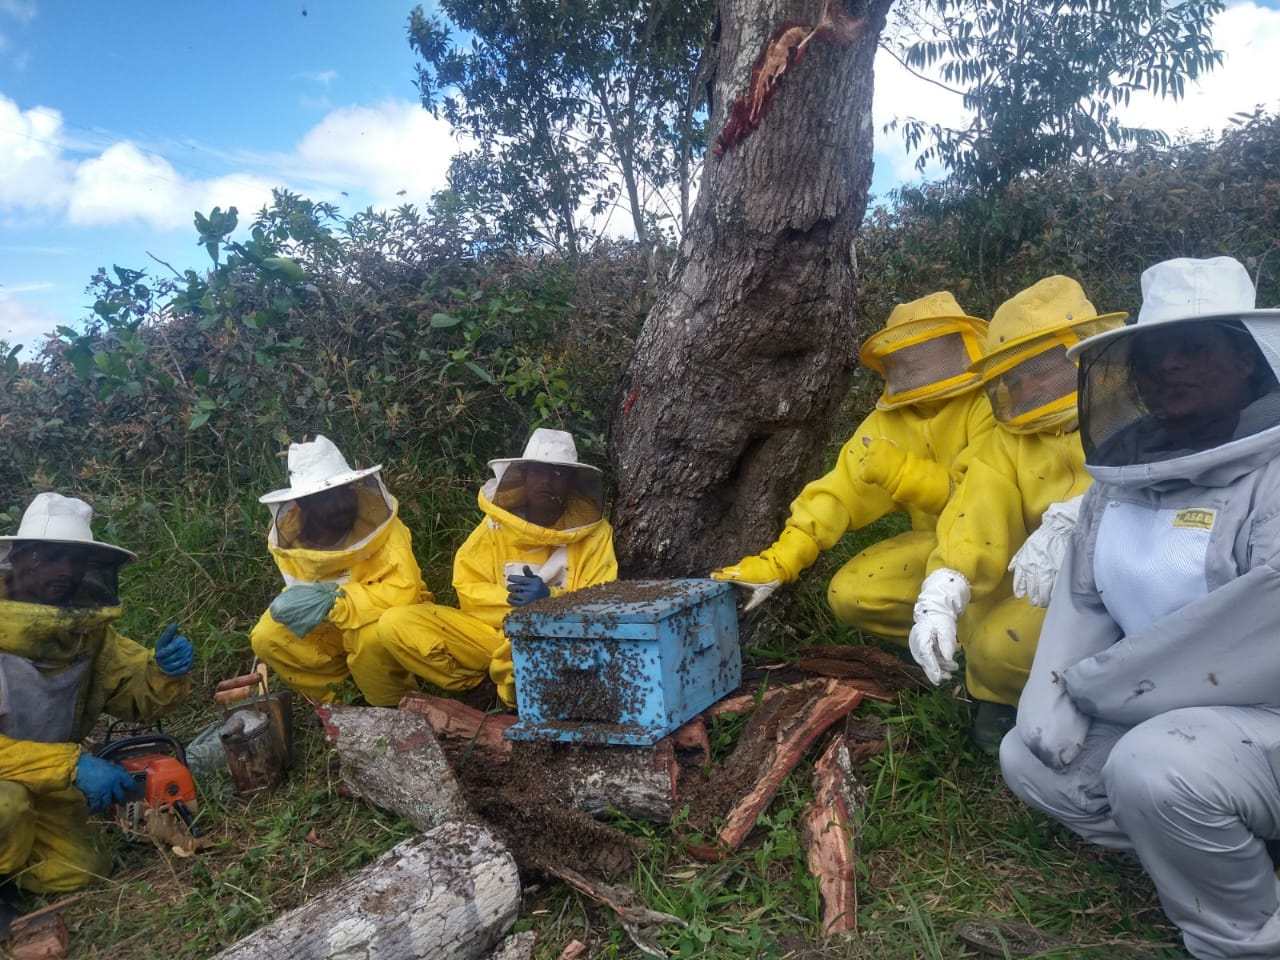 Curioso sobre os ganhos comerciais da apicultura? Descubra o doce